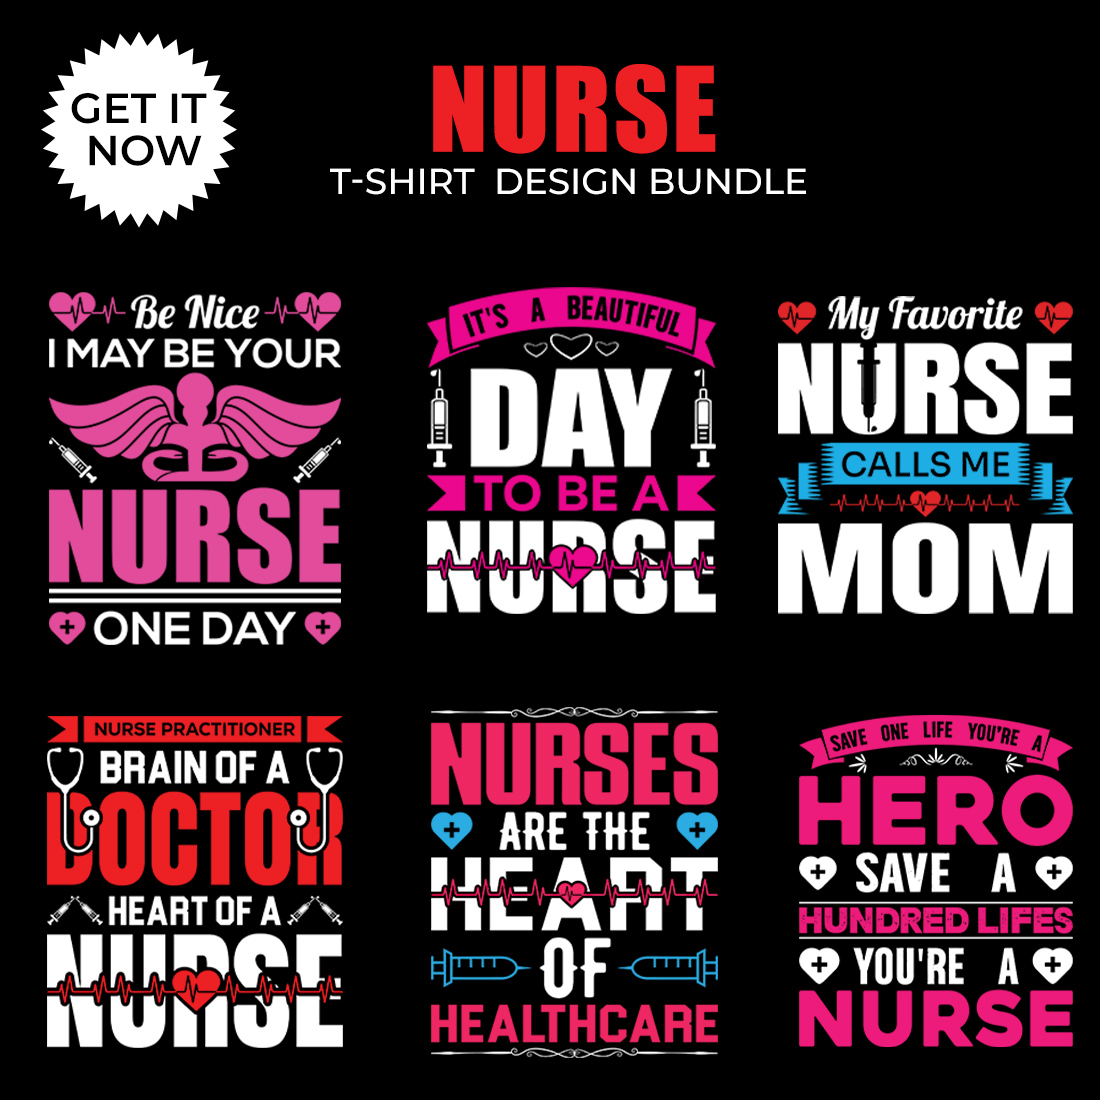 6 creative and unique t shirt design bundle Typography t shirt design bundle cover image.